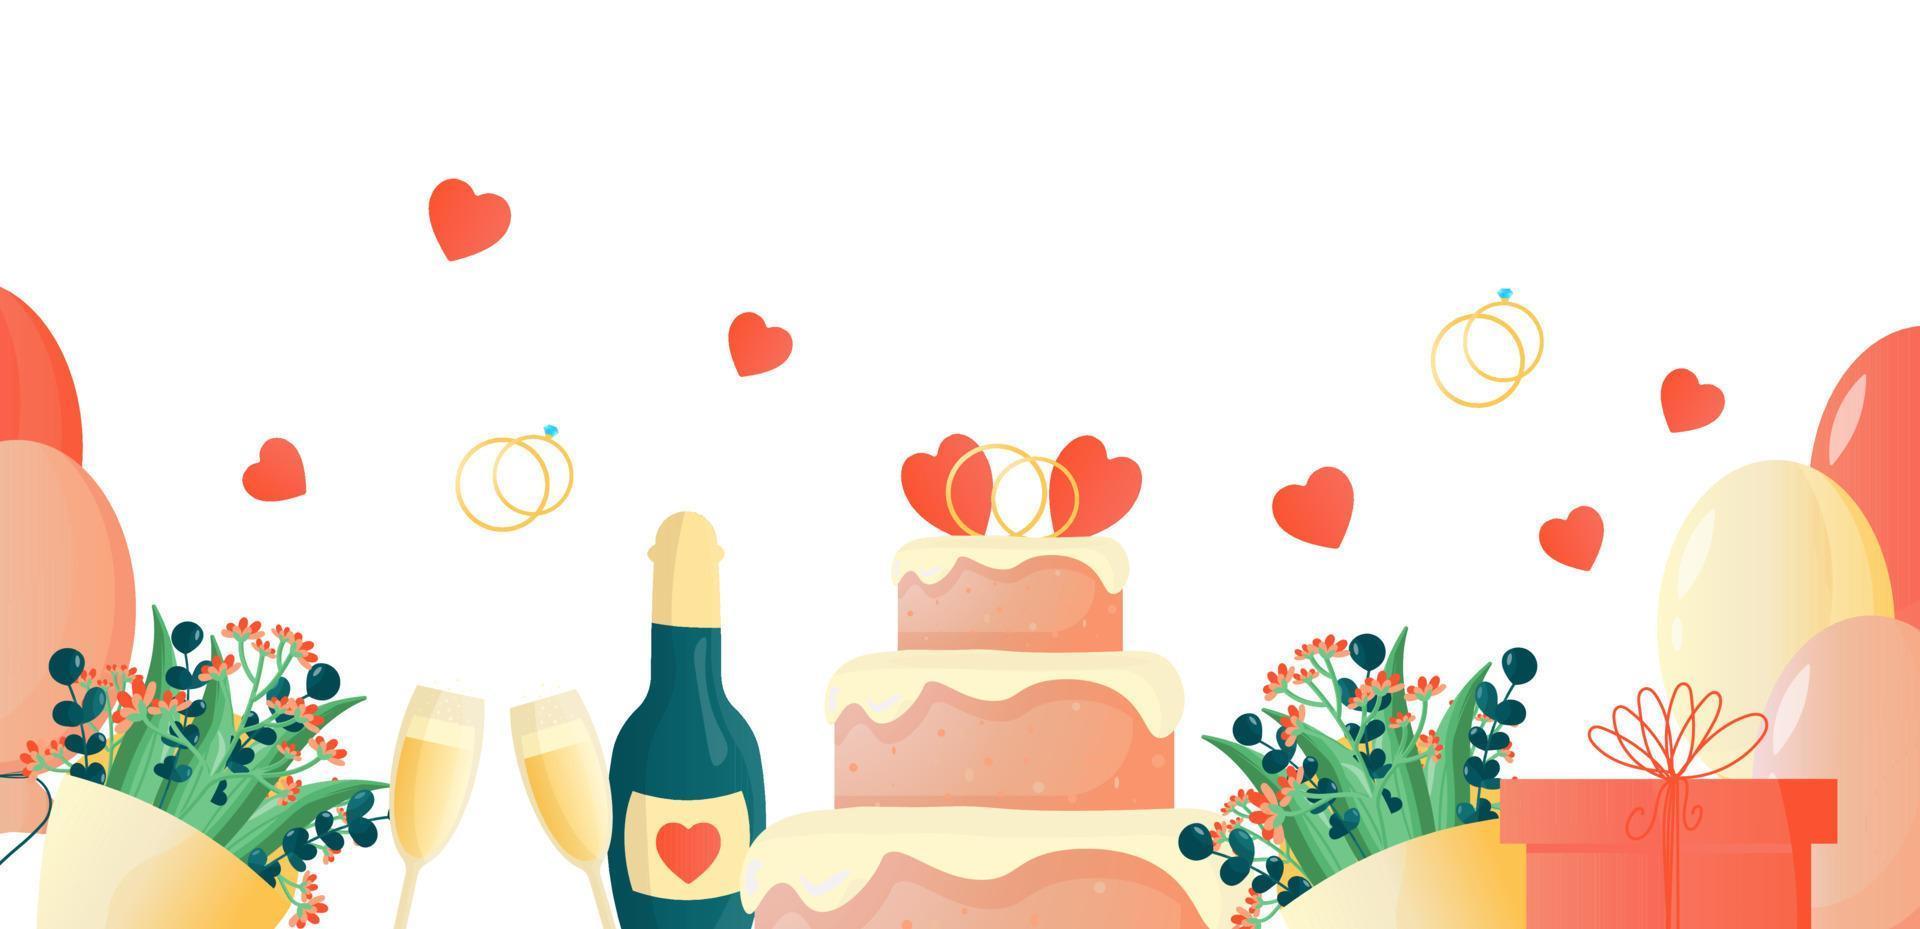 mooie achtergrond voor de huwelijksceremonie. een feestelijke set glazen met een fles champagne, cake, ringen, boeket bloemen, cadeau. vector eenvoudige schattige illustratie voor poster, spandoek, ontwerp.